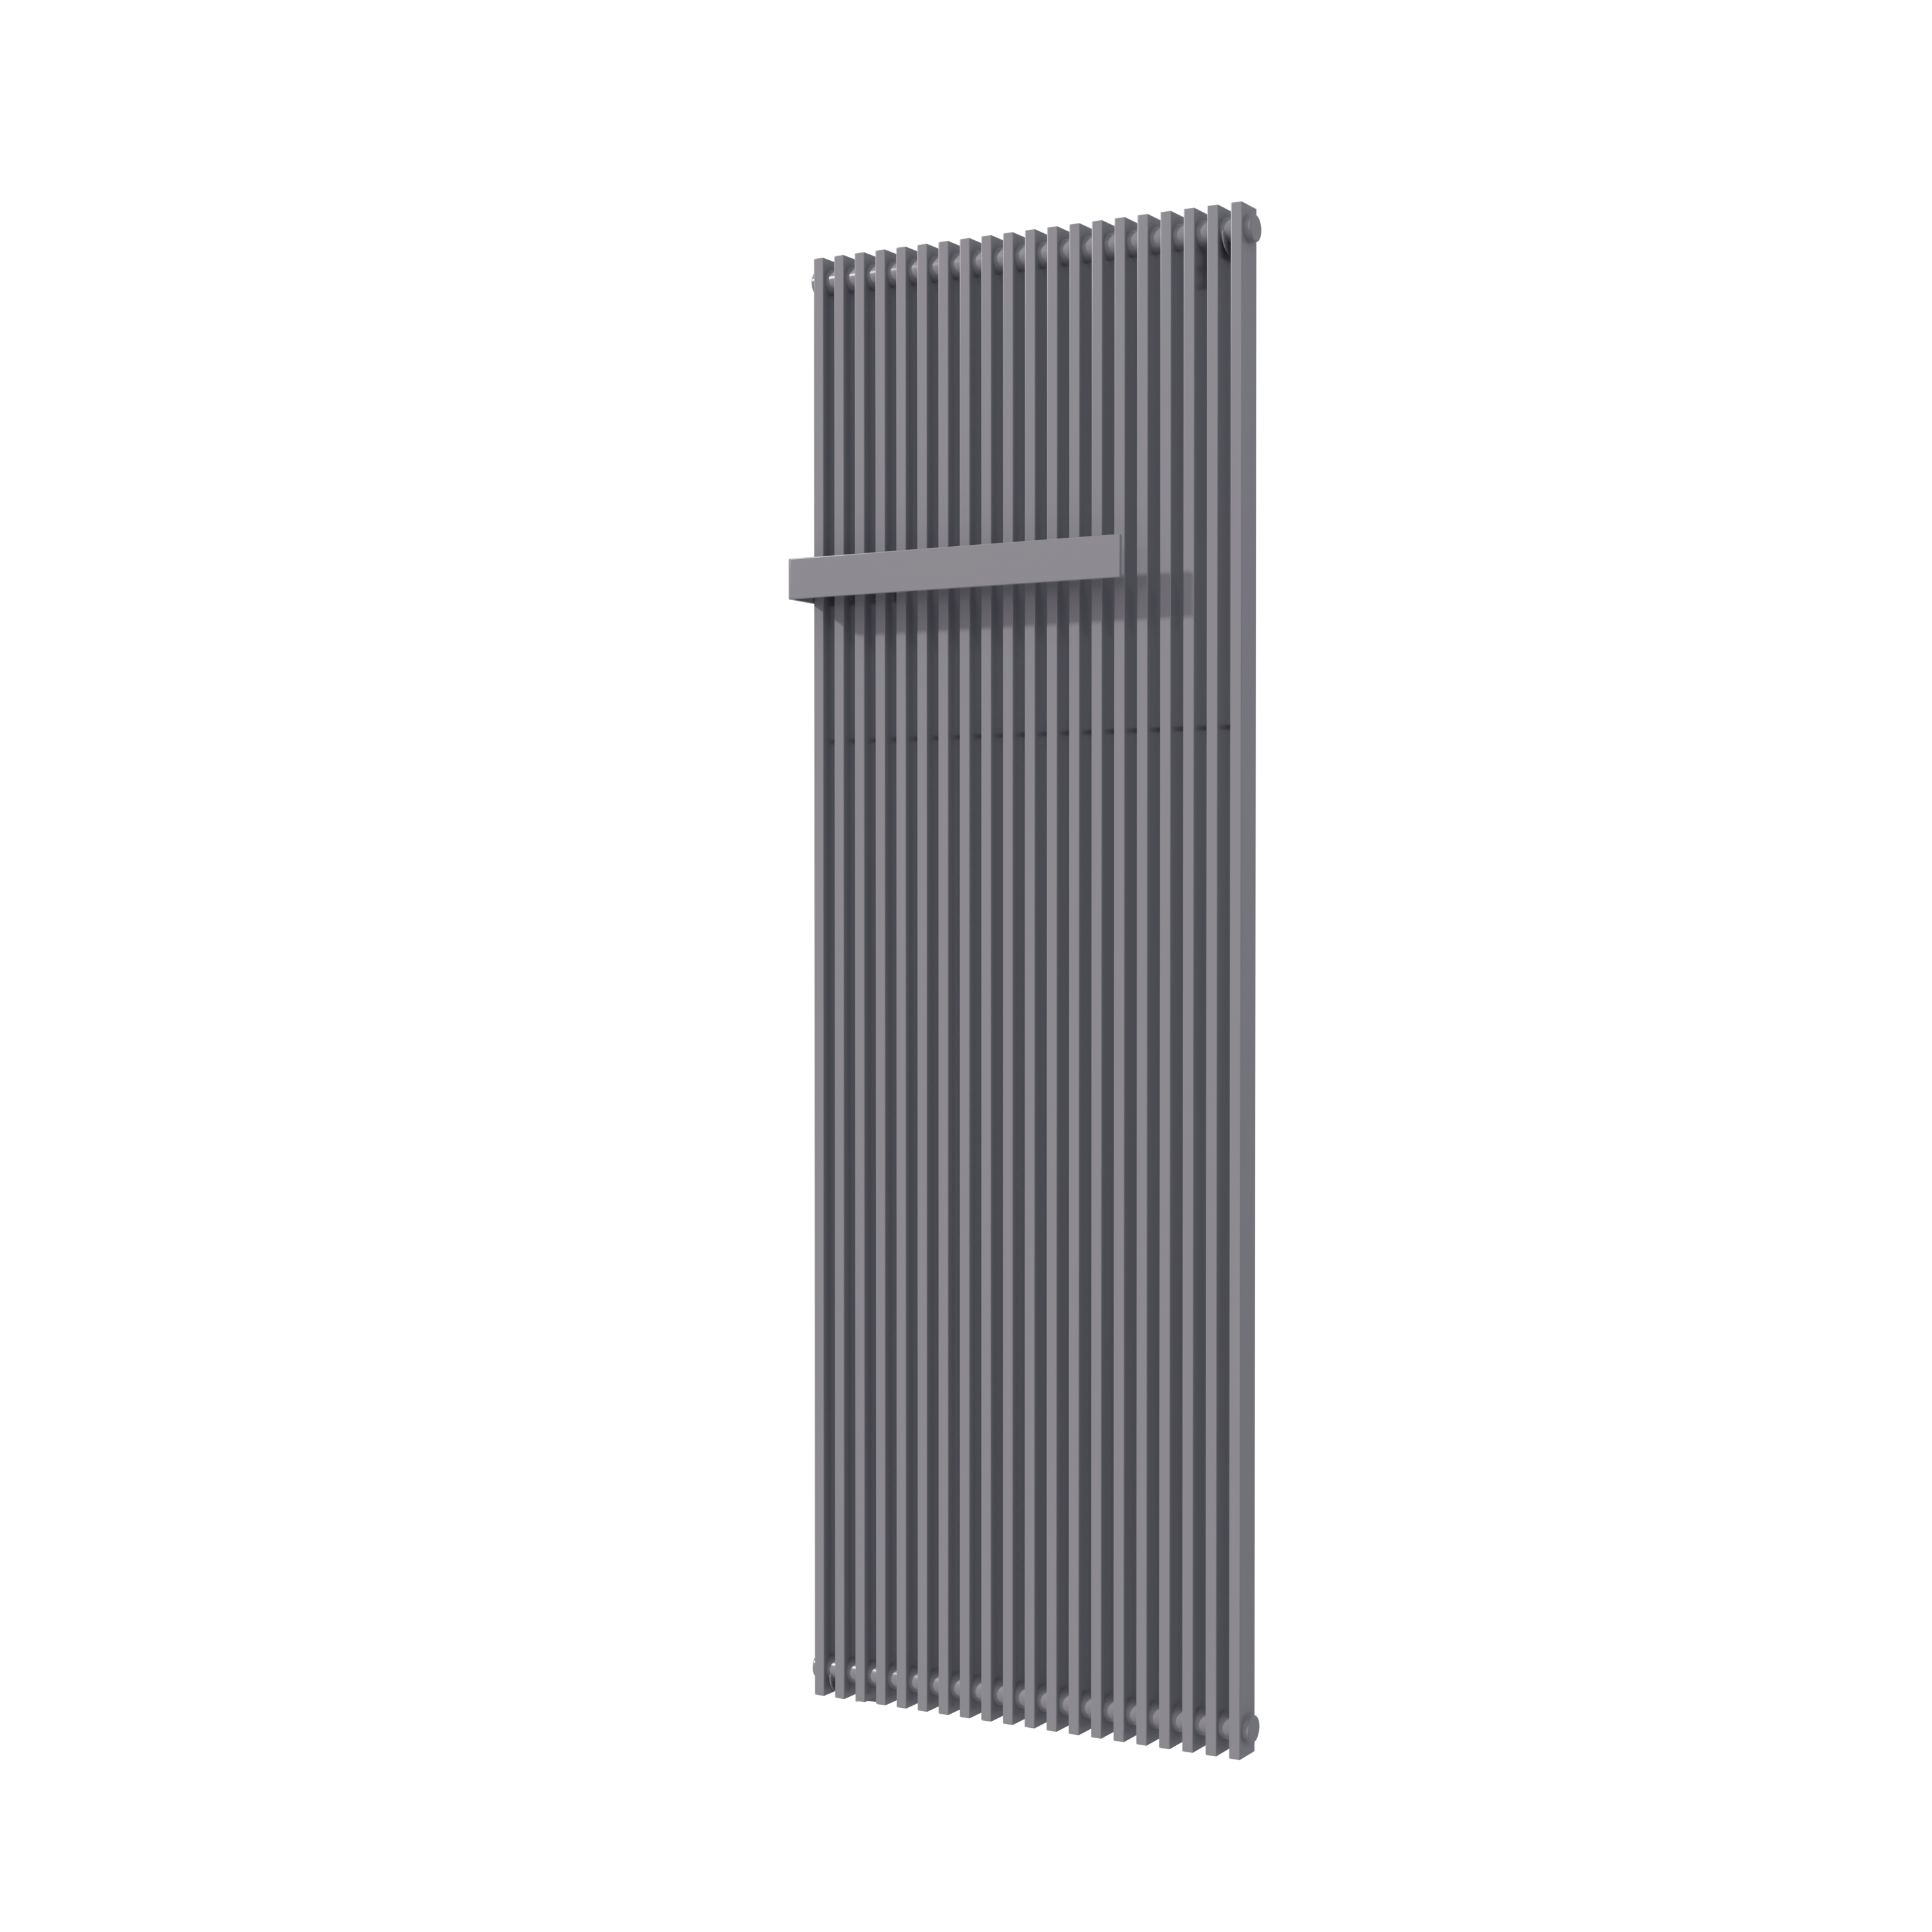 Vipera Corrason enkele badkamerradiator 60 x 180 cm centrale verwarming antraciet grijs zijaansluiting 2.059W